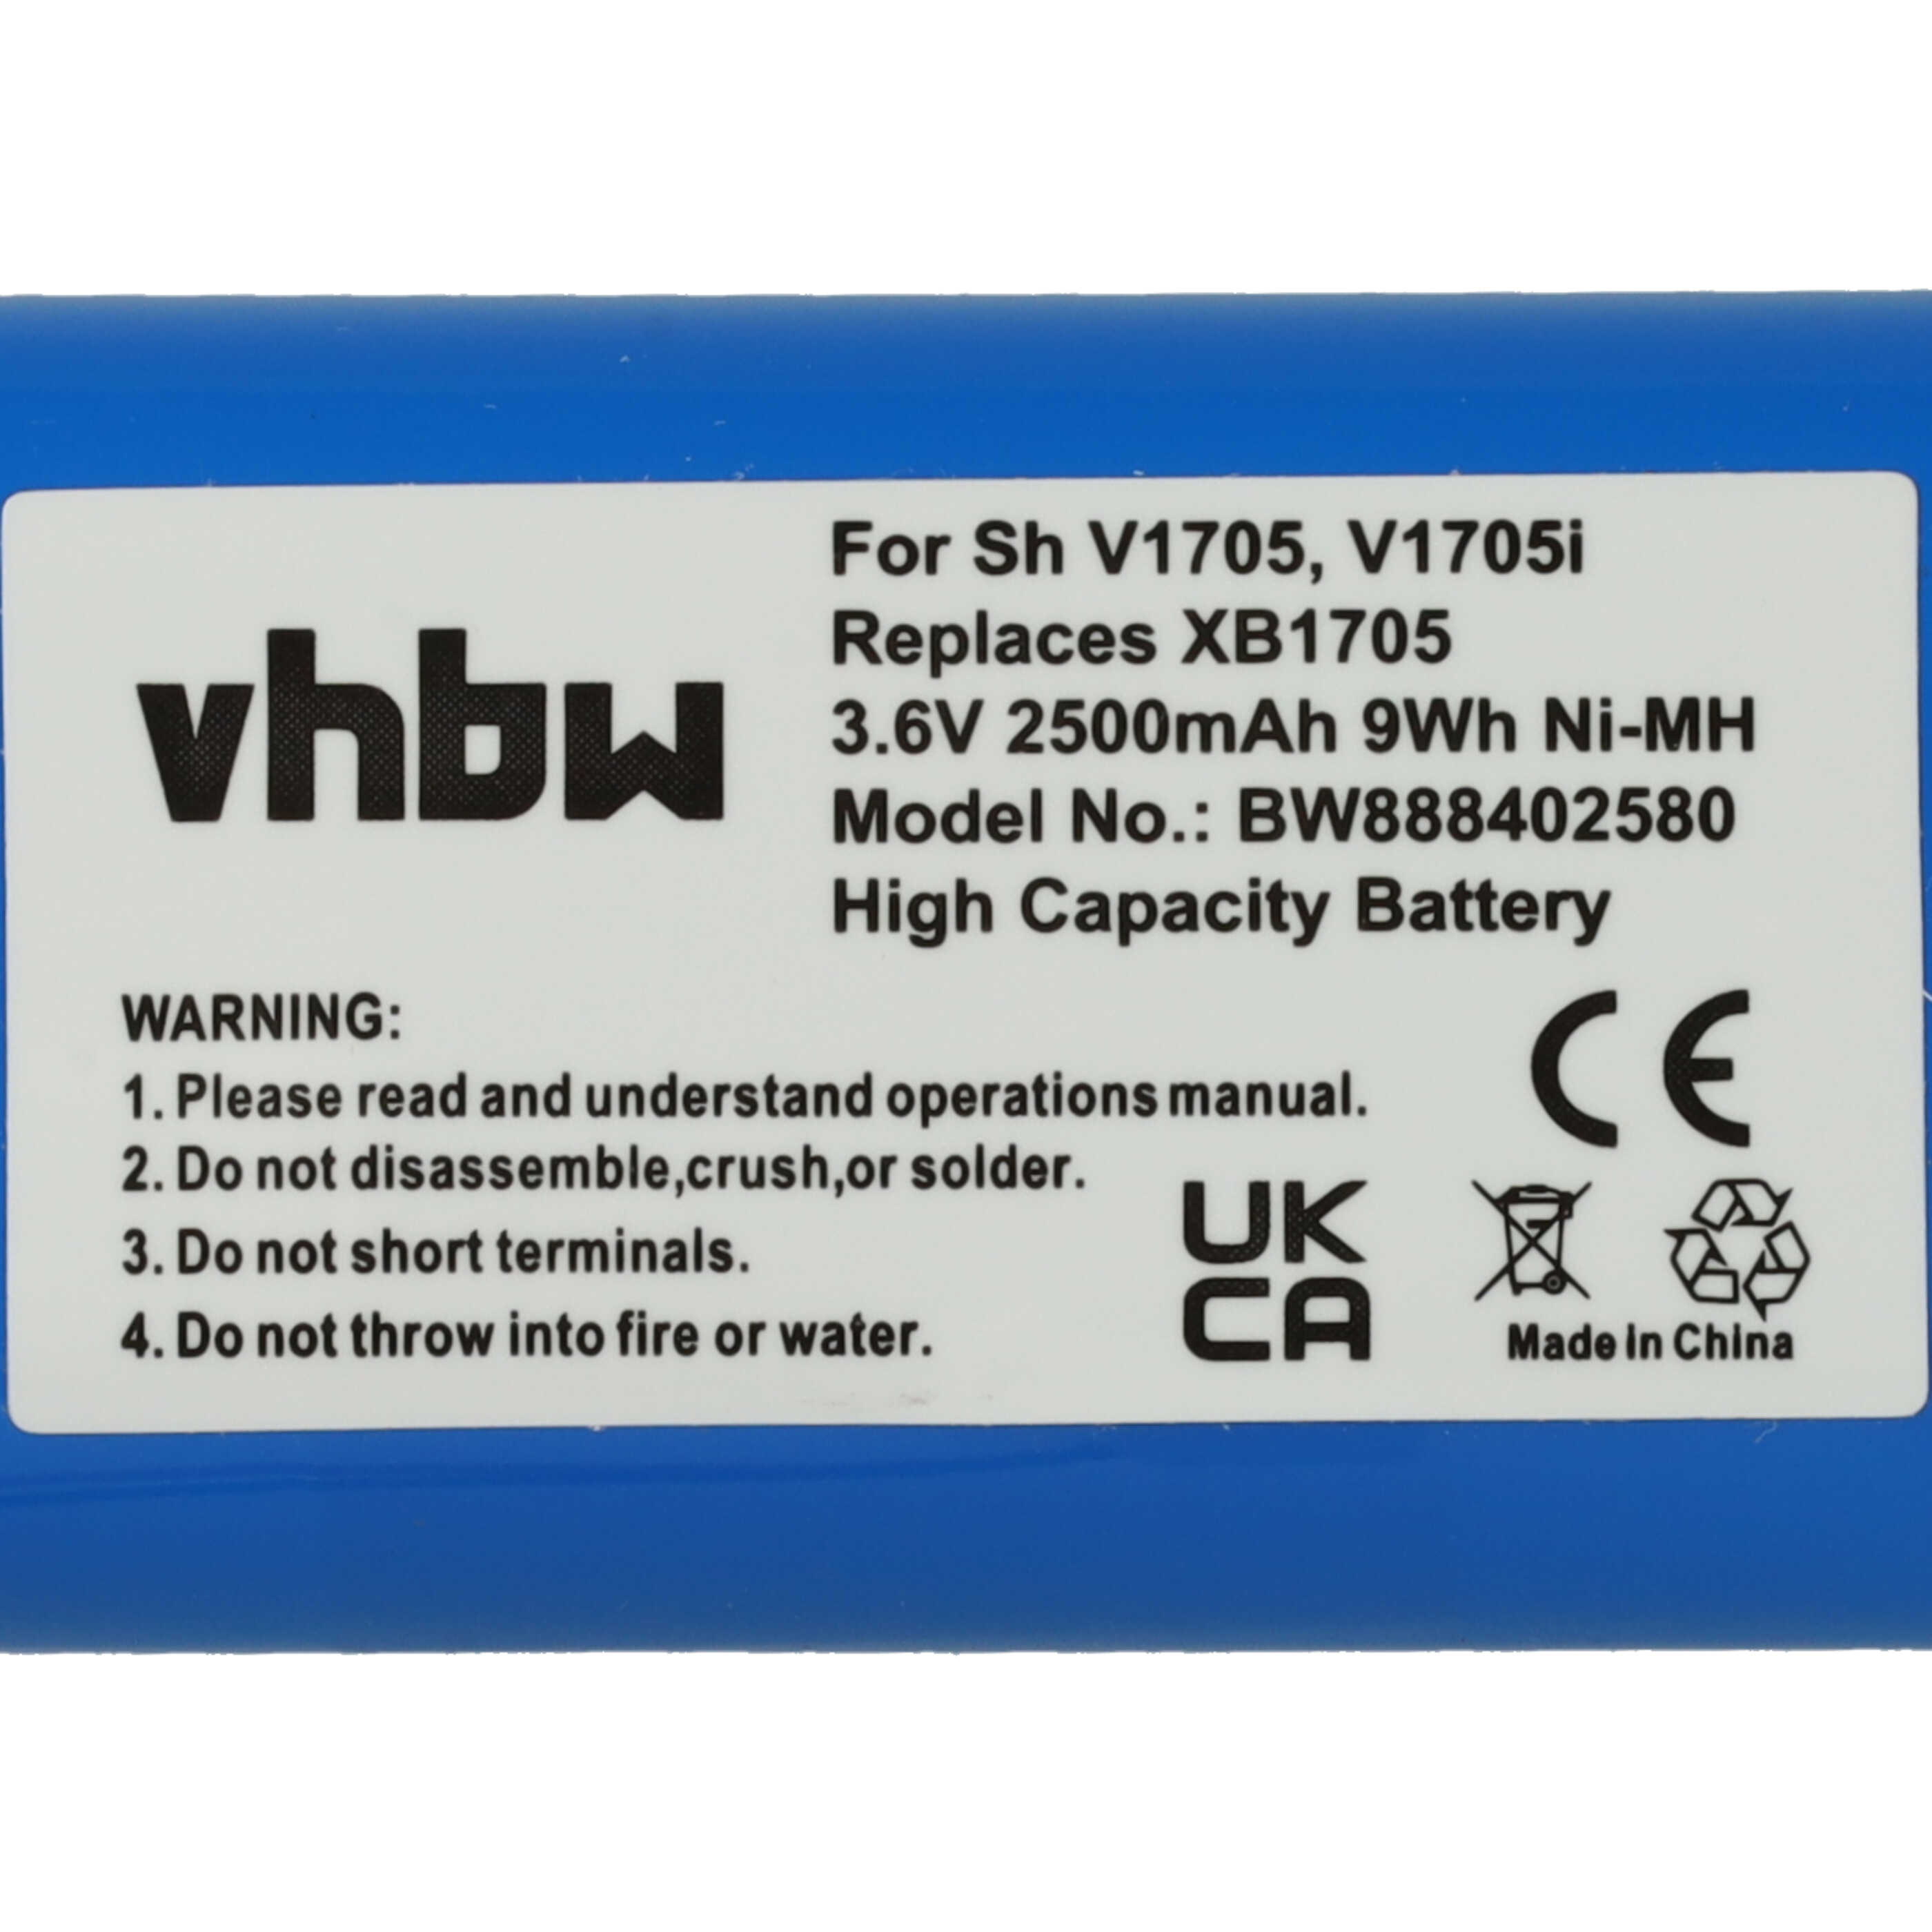 Batterie remplace Euro Pro XB1705 pour aspirateur - 2500mAh 3,6V NiMH